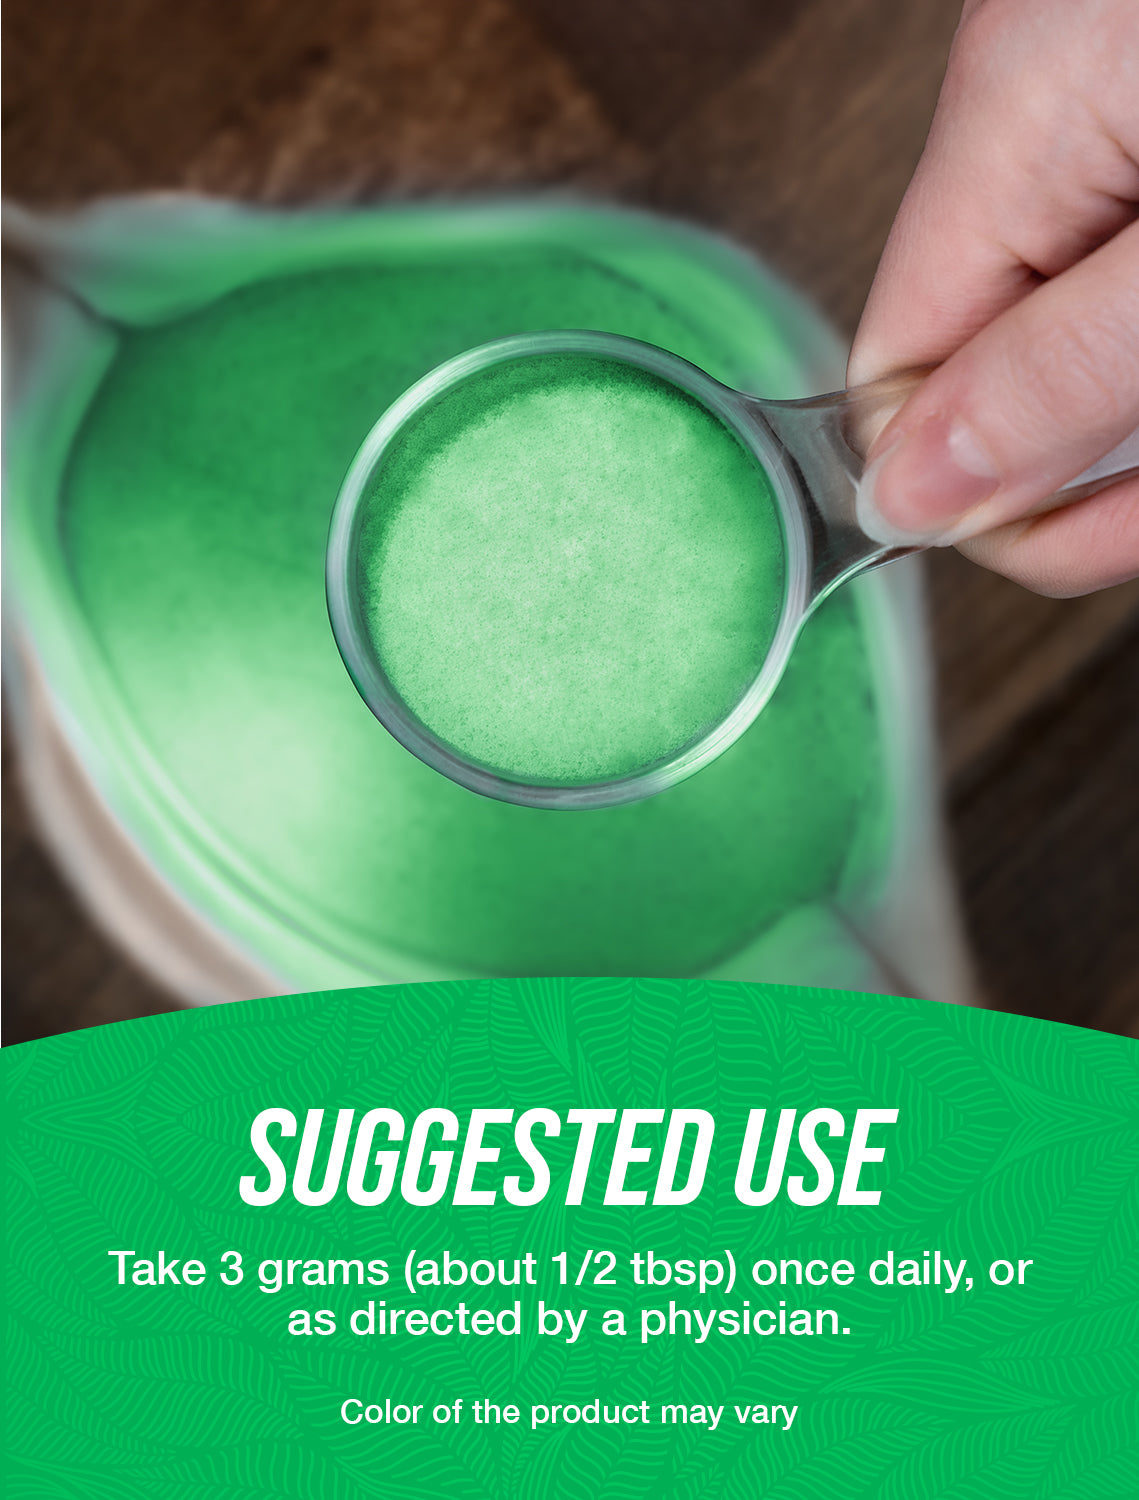 Organic kale powder suggested use image